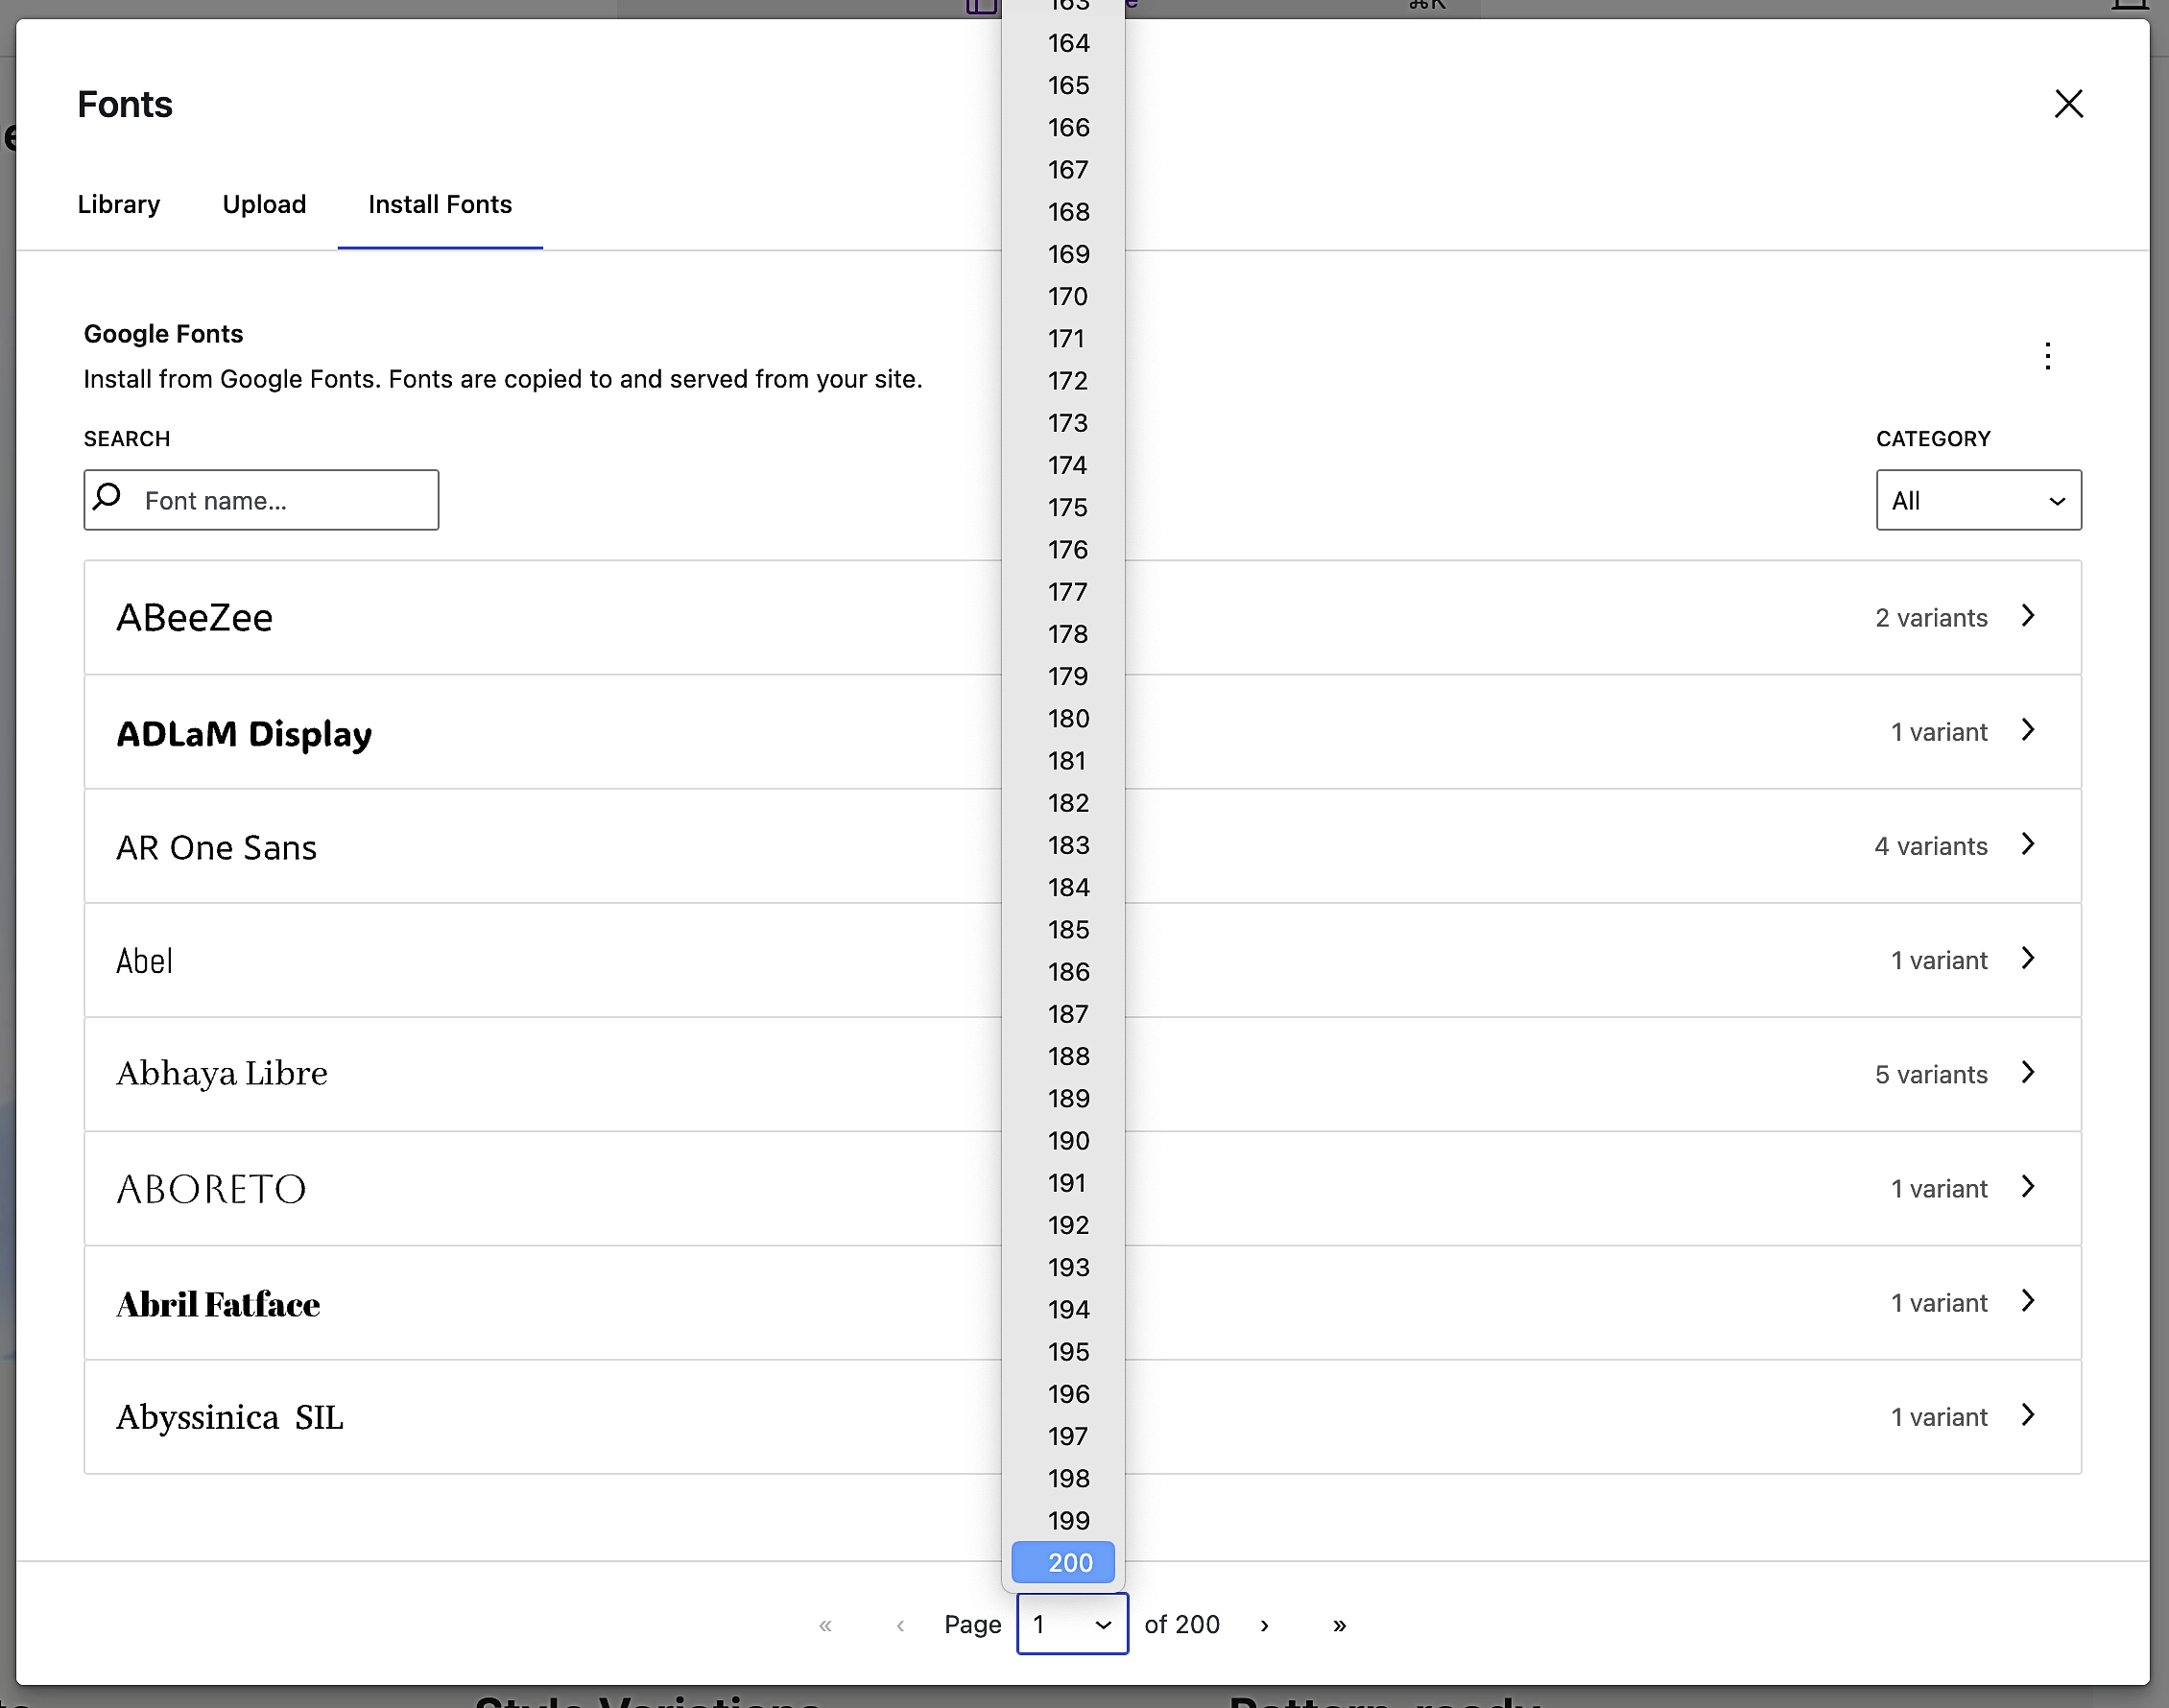 Mostrando que tienes acceso a más de 200 páginas de opciones de fuentes en Google Fonts.